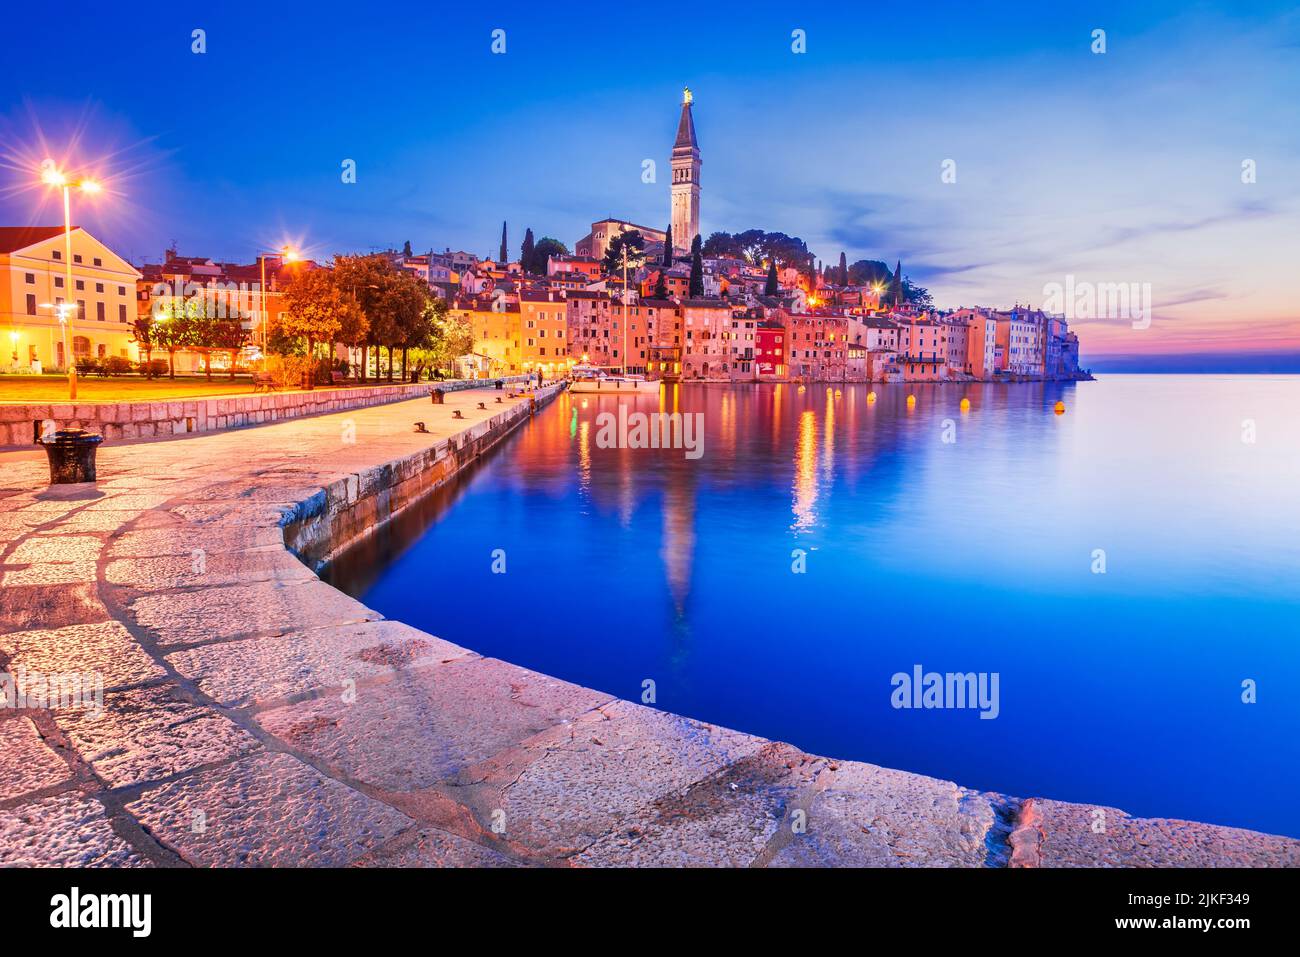 Rovinj, Kroatien. Farbiger Sonnenuntergang im alten Stadthafen, berühmte Stadt Istriens Peniunsula, kroatisches Wahrzeichen der Reise. Stockfoto